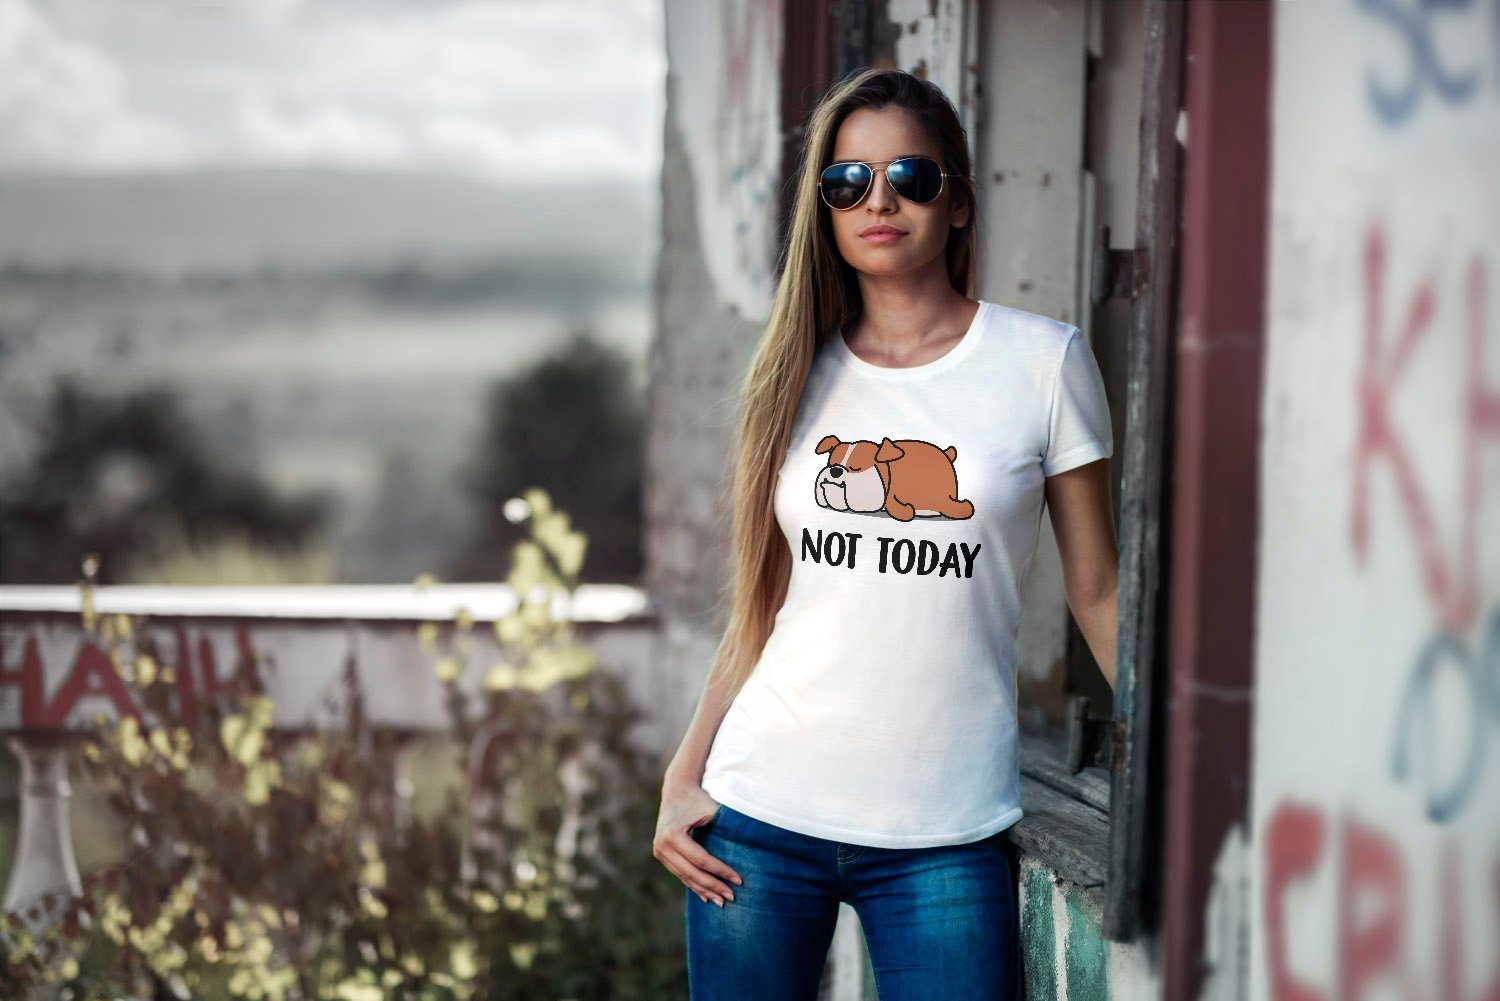 MoonWorks Print-Shirt Lustiges Damen T-Shirt Hund Fun-Shirt mit weiß Today Chillen Print Not Moonworks®